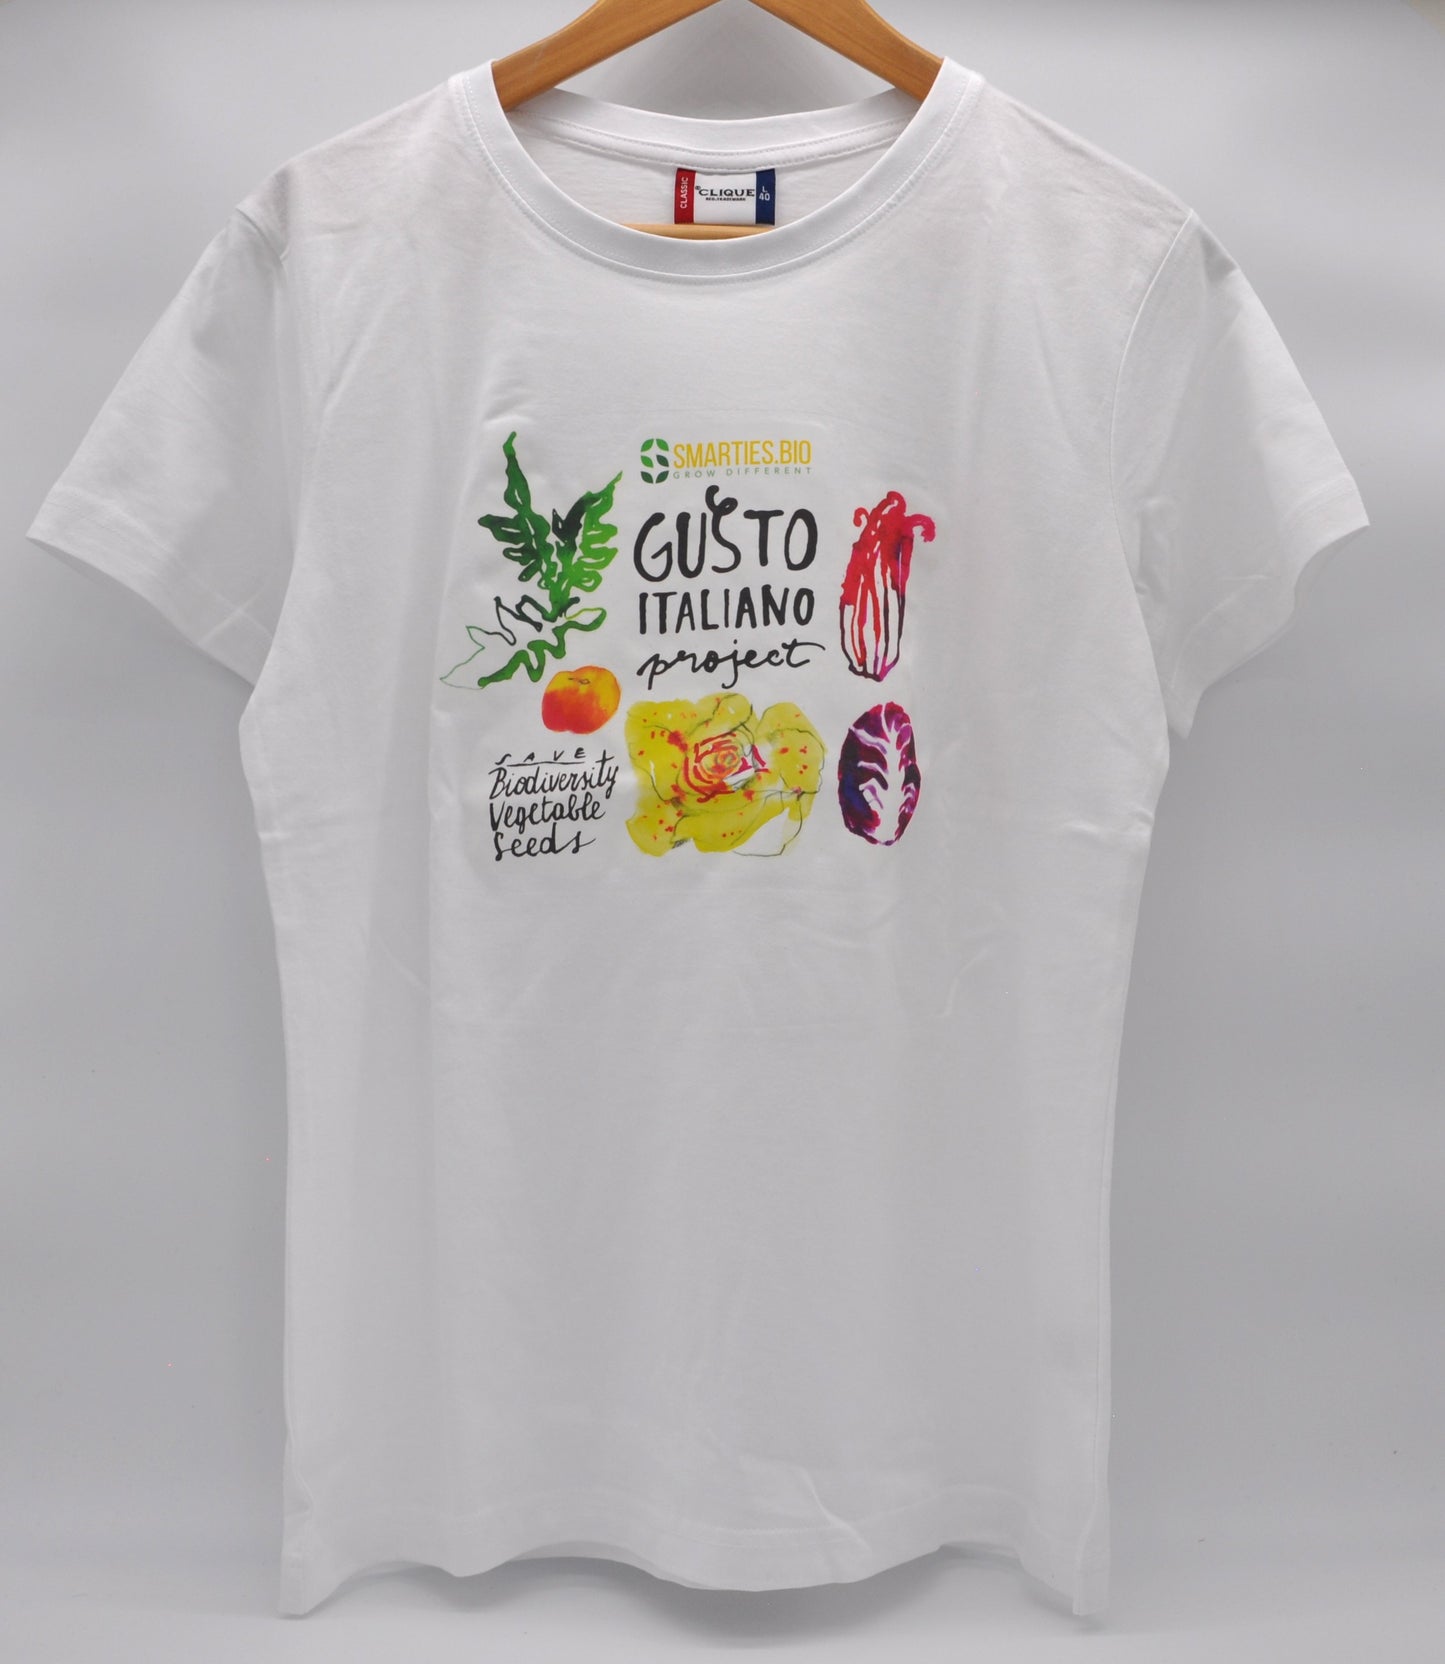 
                  
                    T-shirt “Gusto Italiano Project”
                  
                